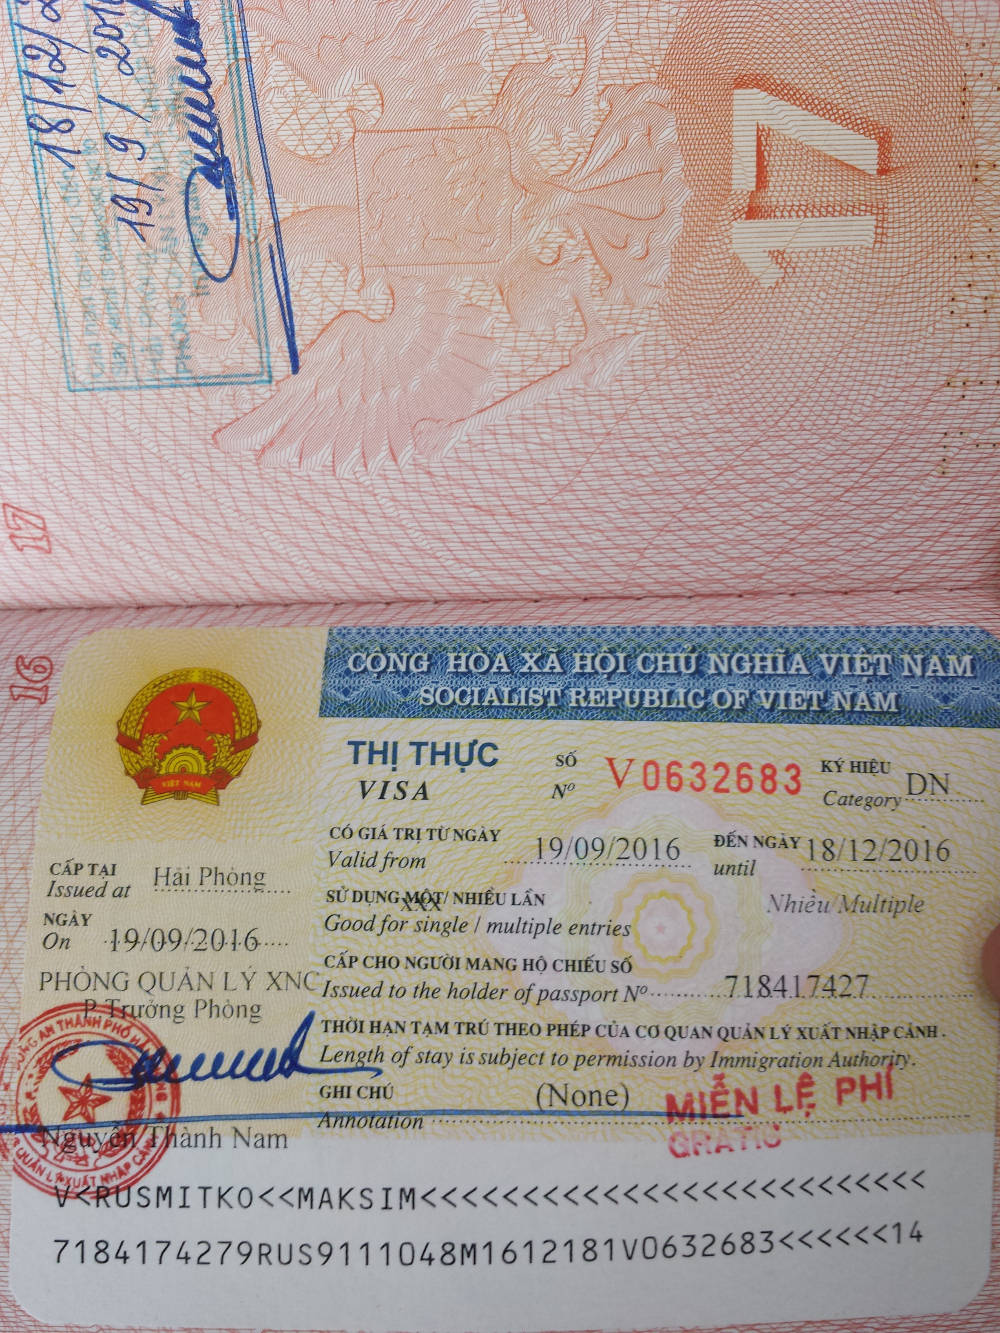 Một số dịch vụ tư vấn gia hạn visa cho người nước ngoài tại Hải Phòng bạn cần biết